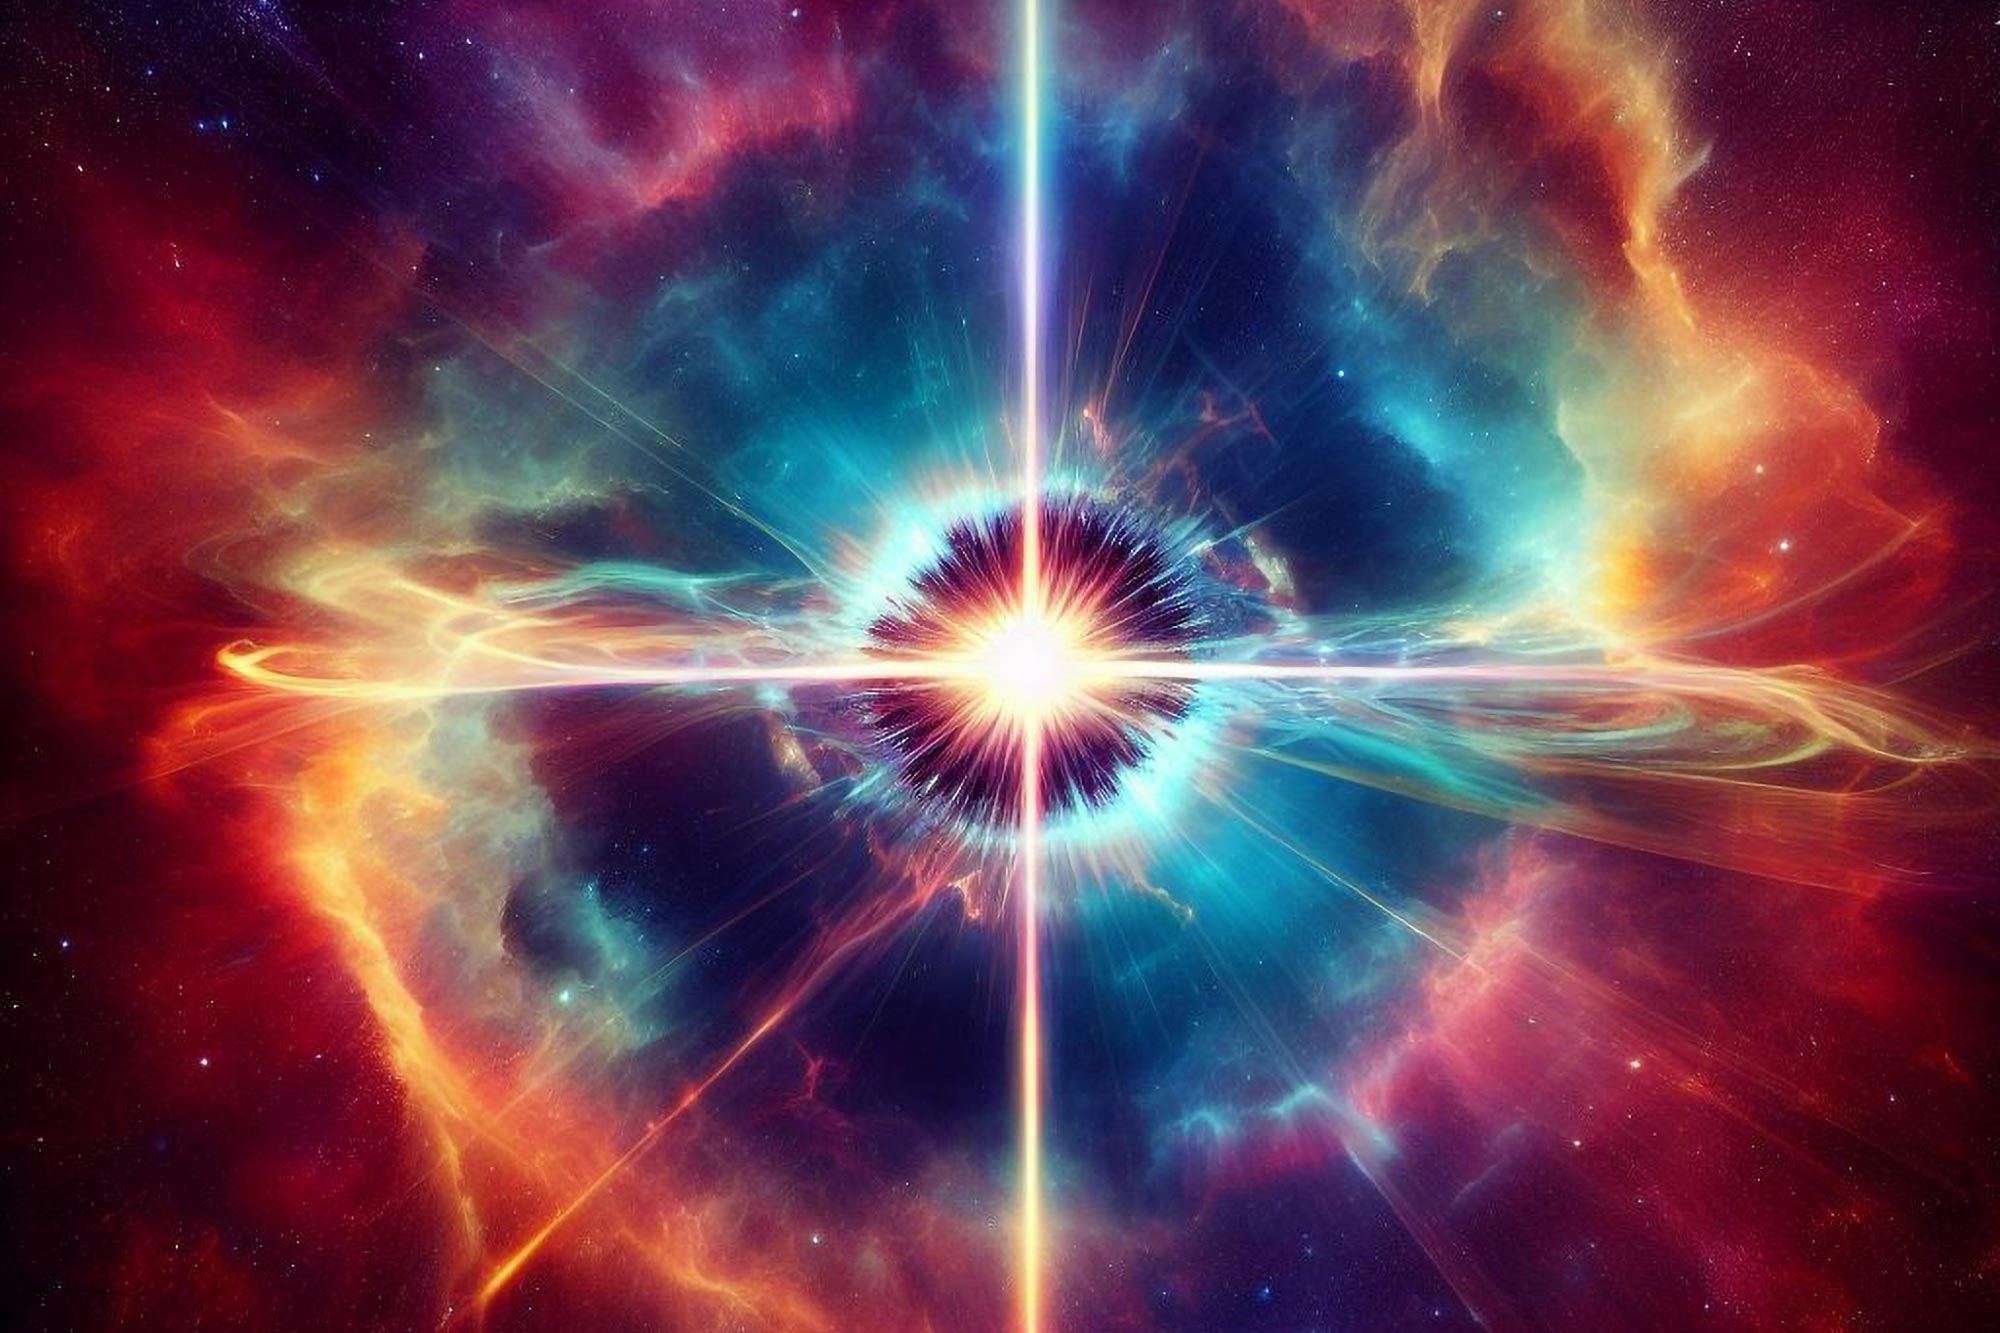 Los rayos gamma de Pulsar, que baten récords, desconciertan a los científicos